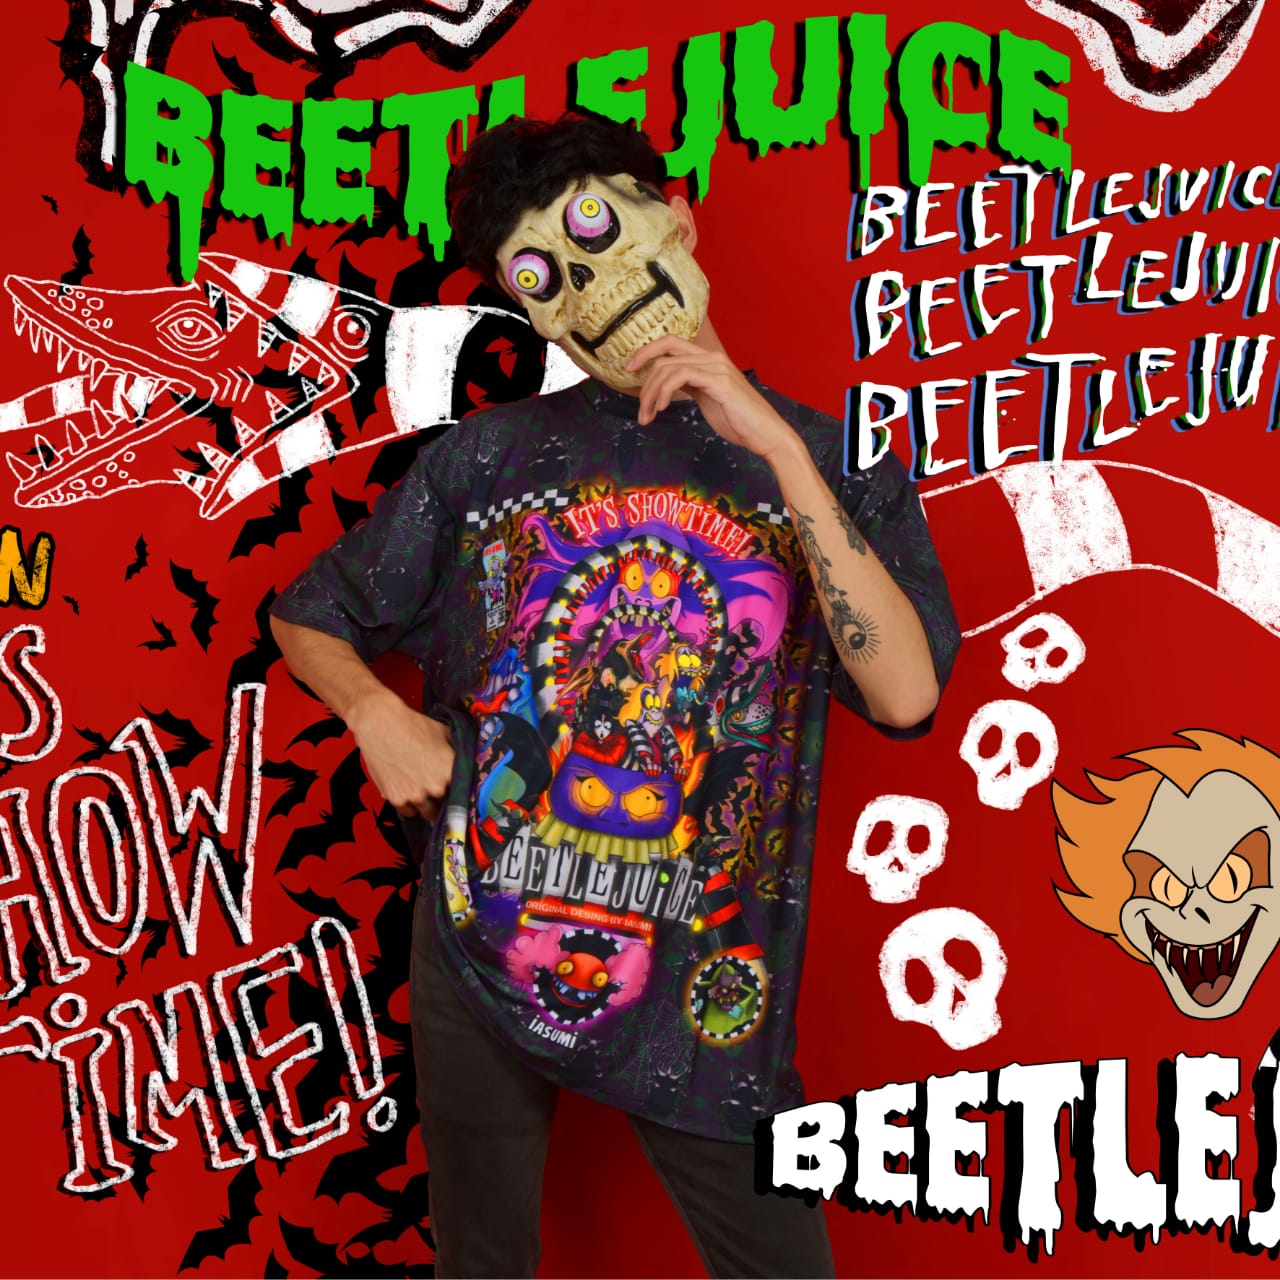 Camiseta Sublim ¡Beetlejuice Beetlejuice Beetlejuice!